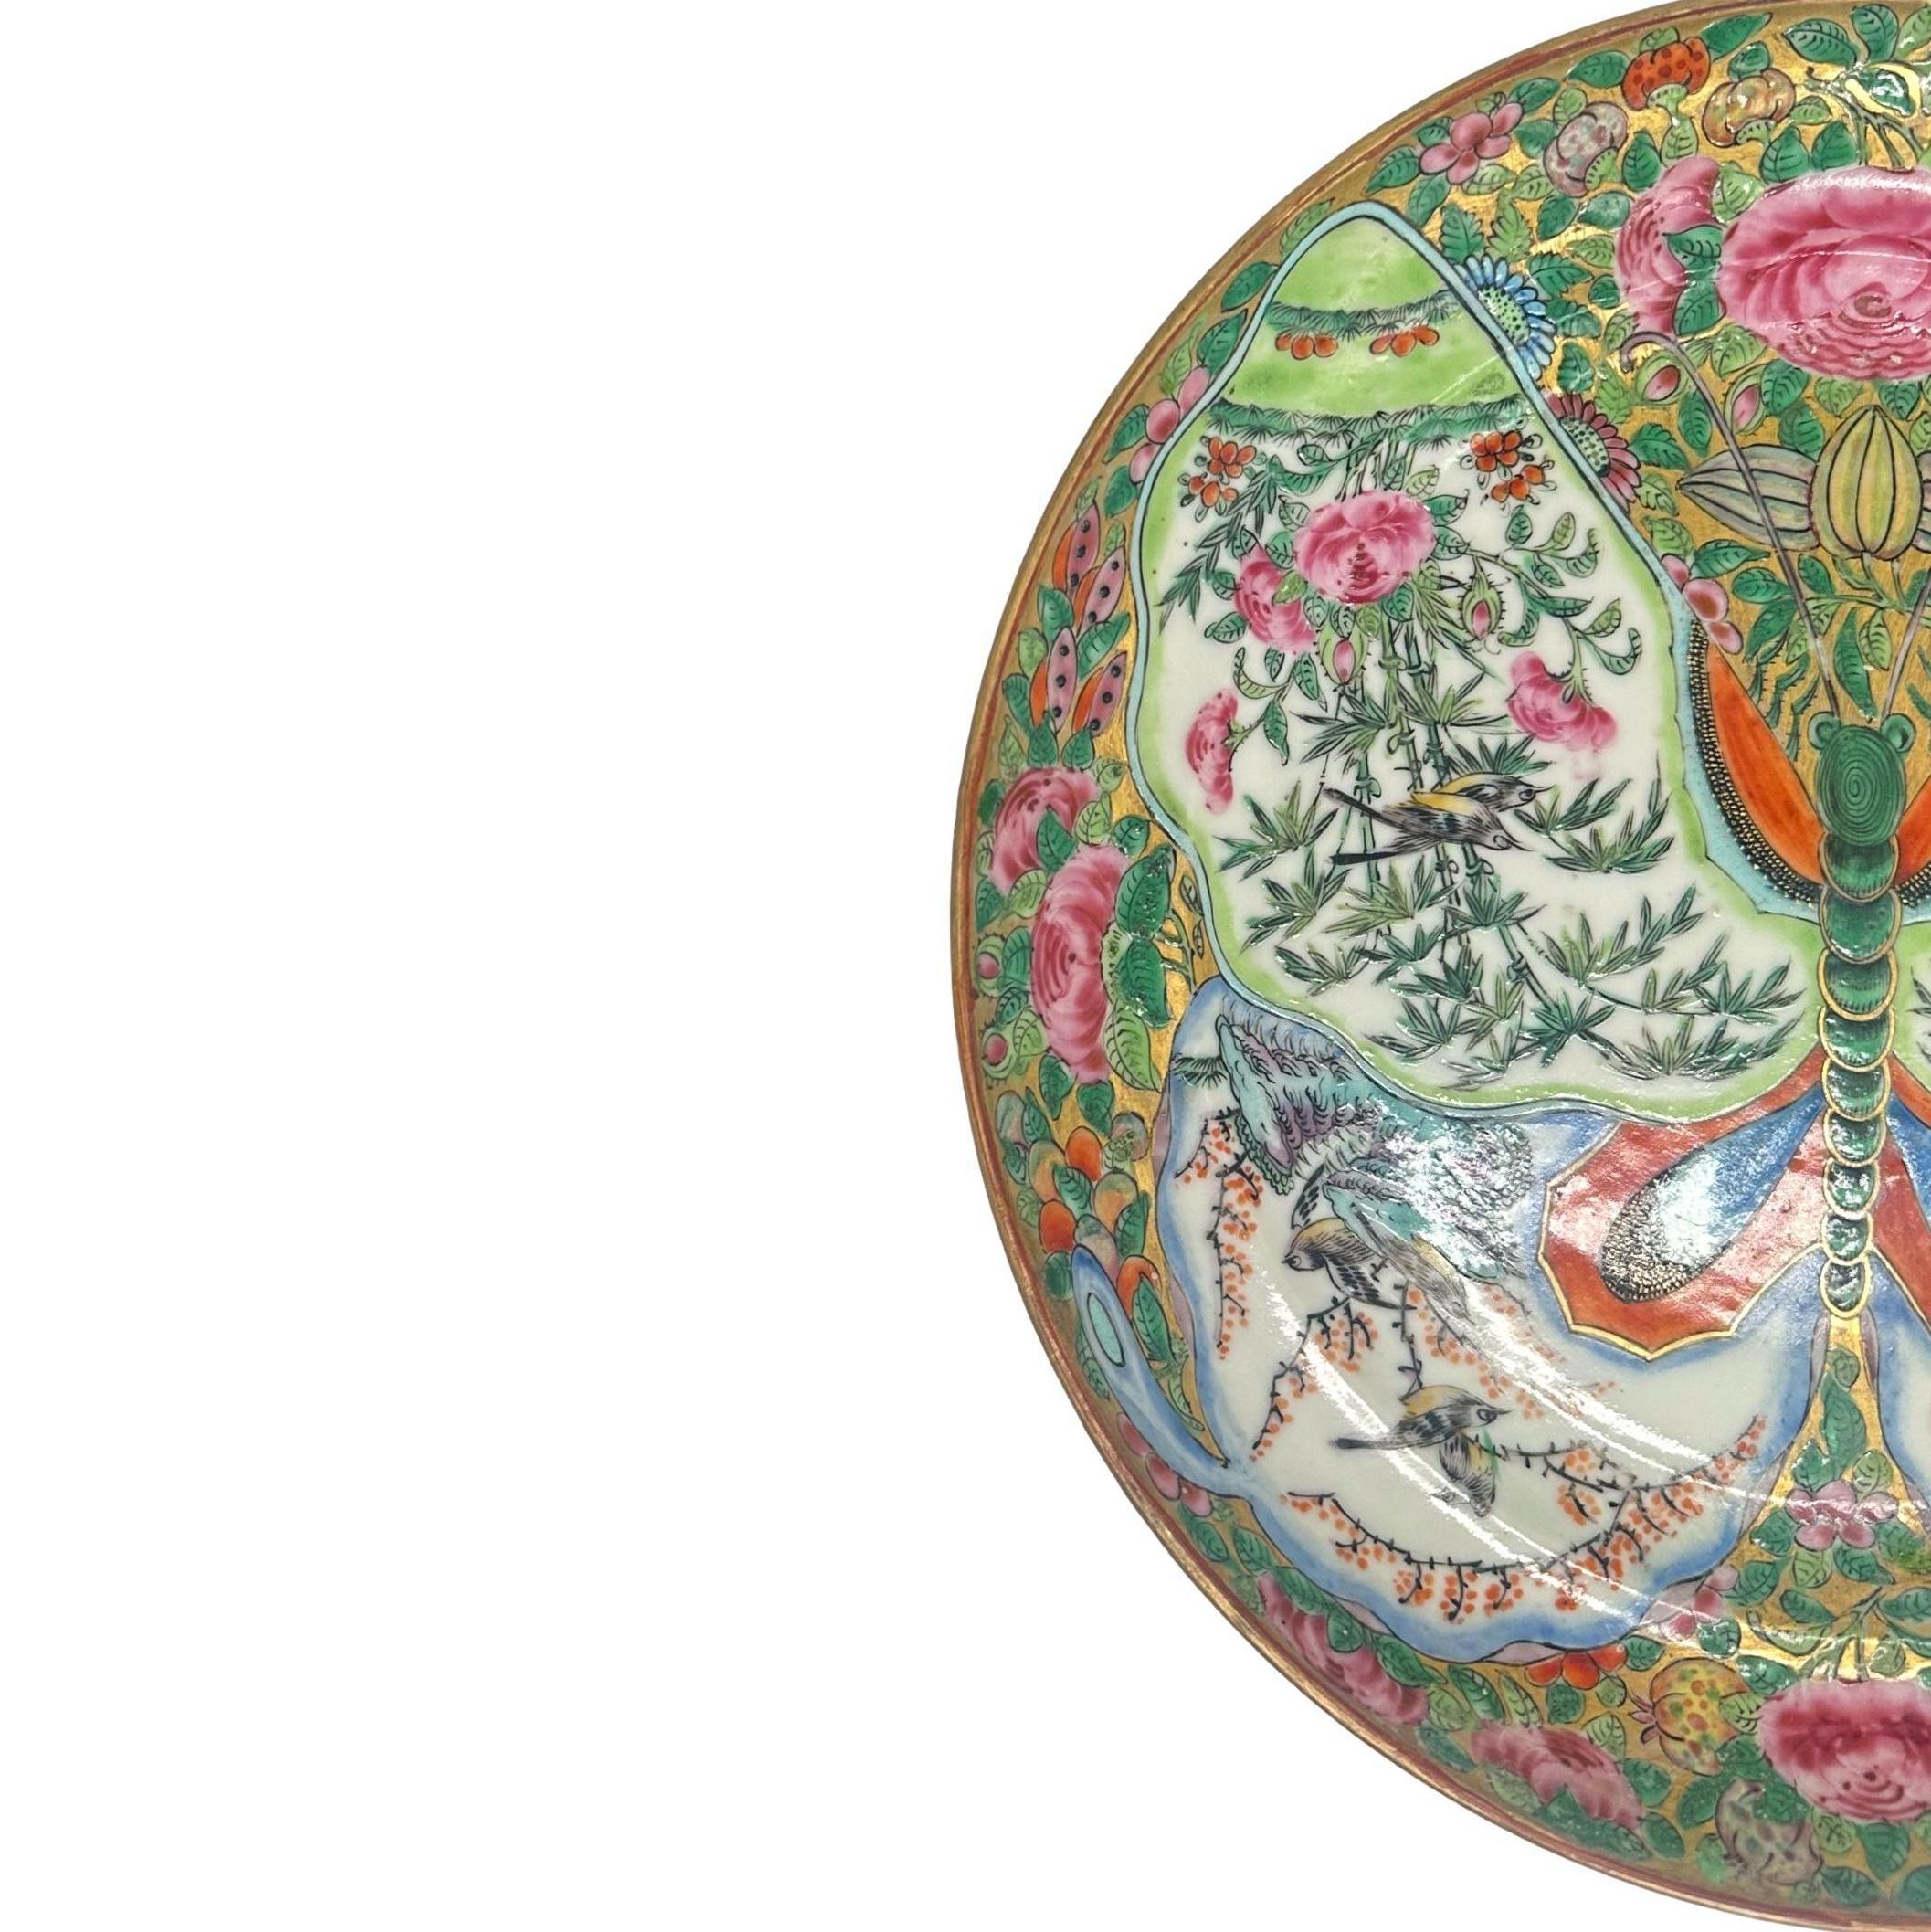 Ein chinesischer Export-Schmetterlingsteller der Famille Rose-Kanton-Familie, ca. 1860, seltenes Design. (Chinesischer Export)